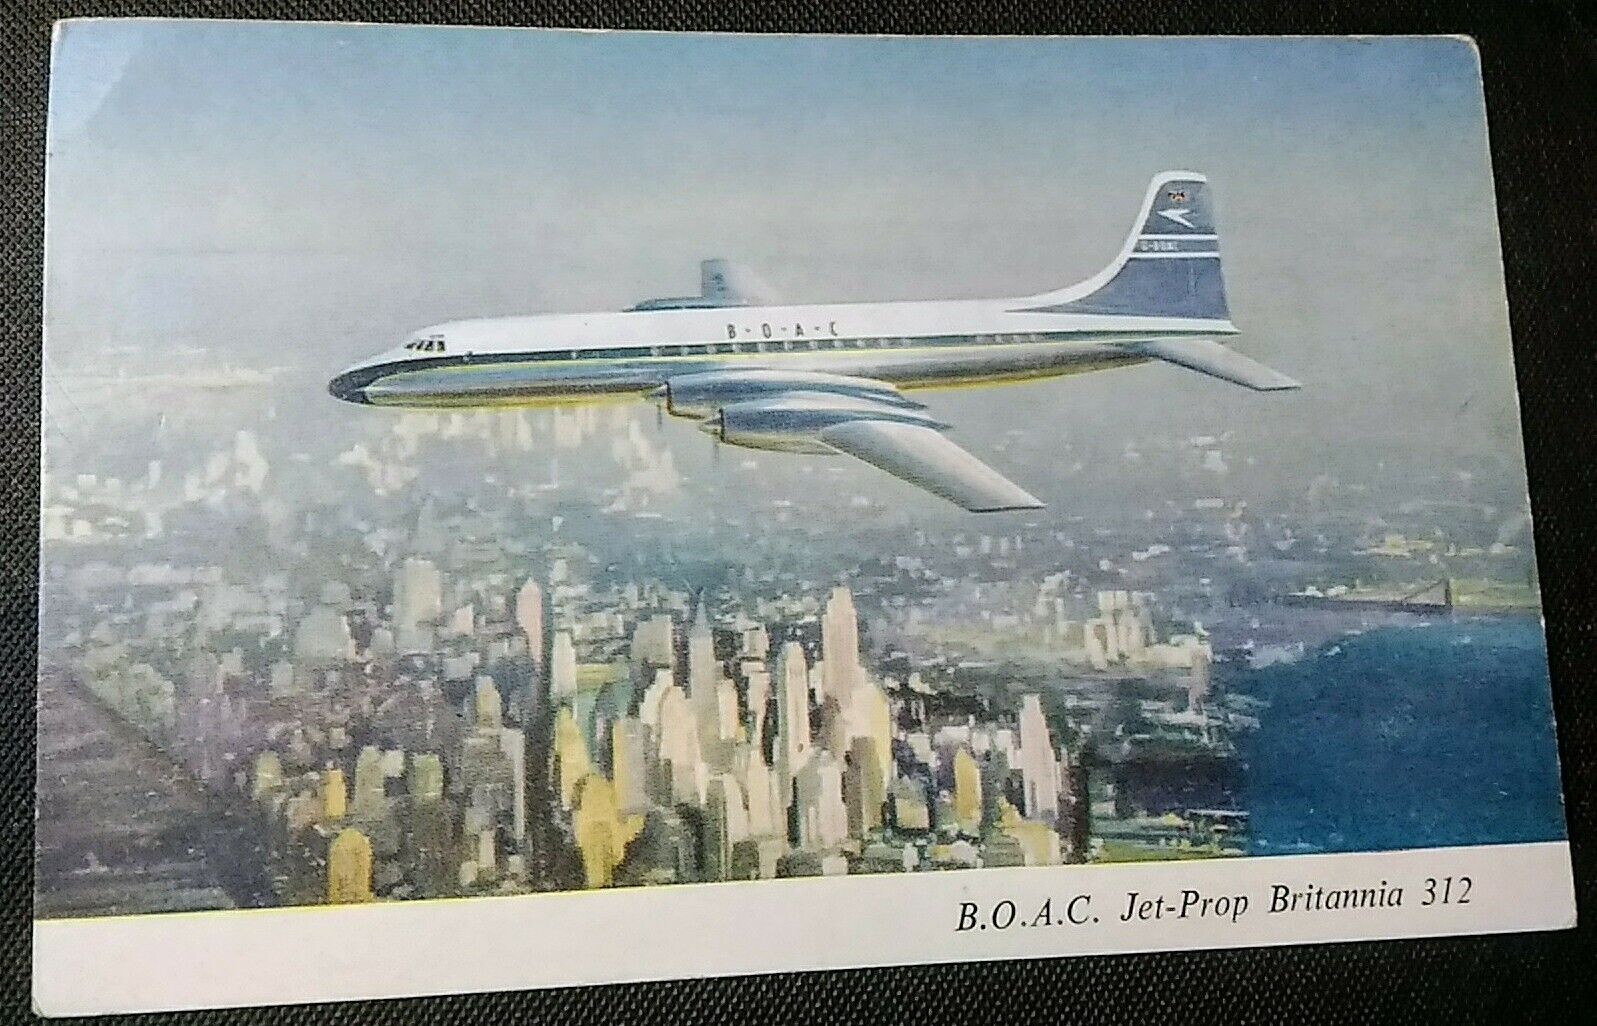 B.O.A.C. Turbo-Prop Britannia Air Liner Vintage Postcard PC